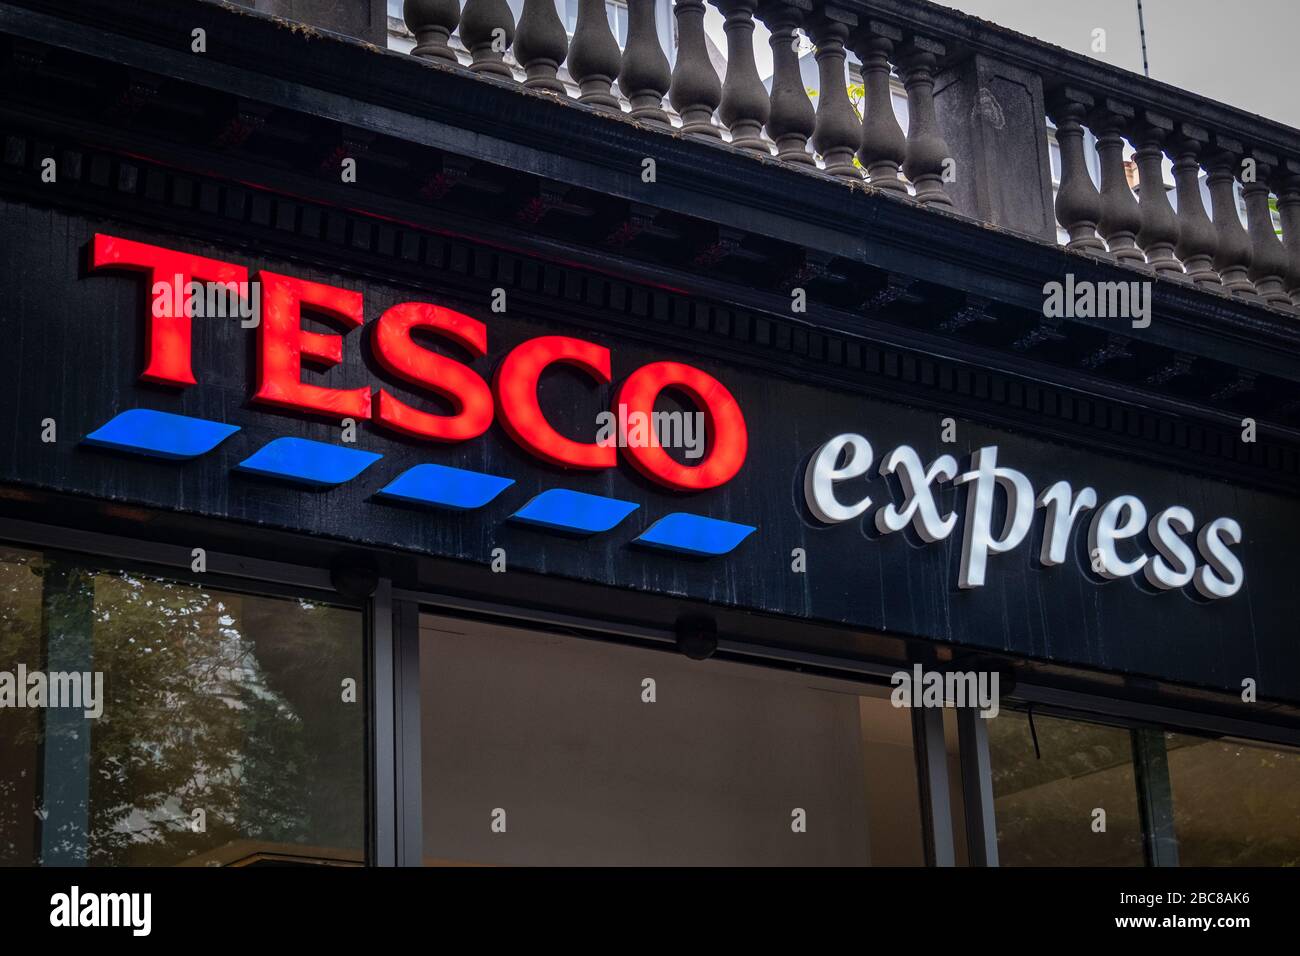 Tesco Express- versione locale della grande catena di supermercati inglesi- logo esterno / segnaletica- Londra Foto Stock